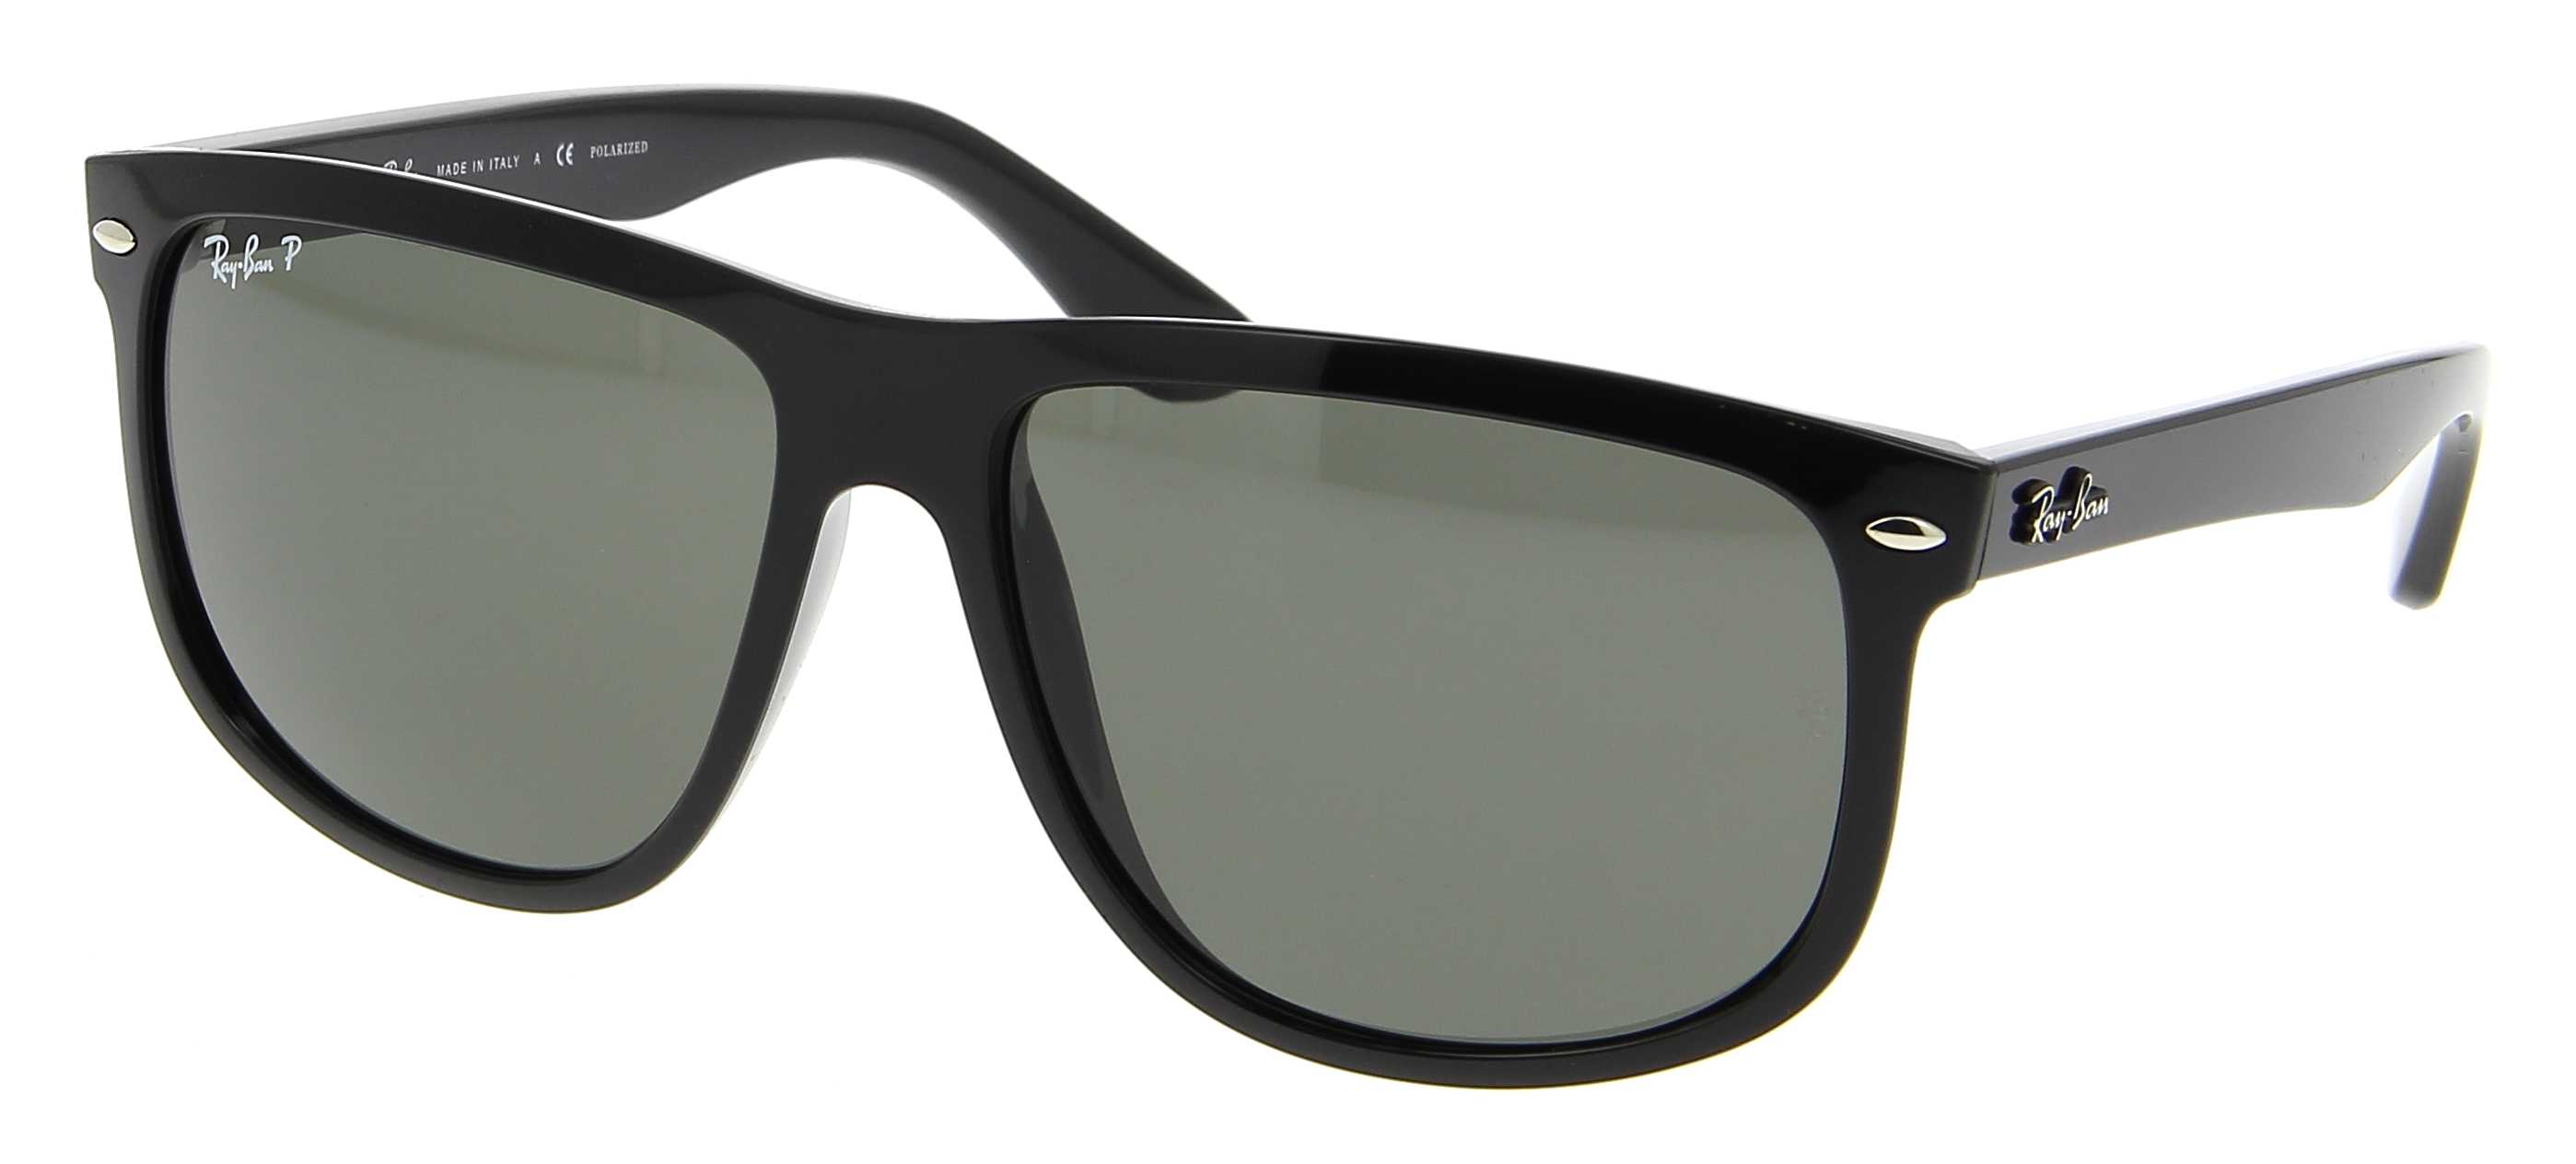 Sunglasses RAY-BAN RB 4147 601/58 Boyfriend 60/15 Man noir square frames  Full Frame Glasses trendy 60mmx15mm 164$CA